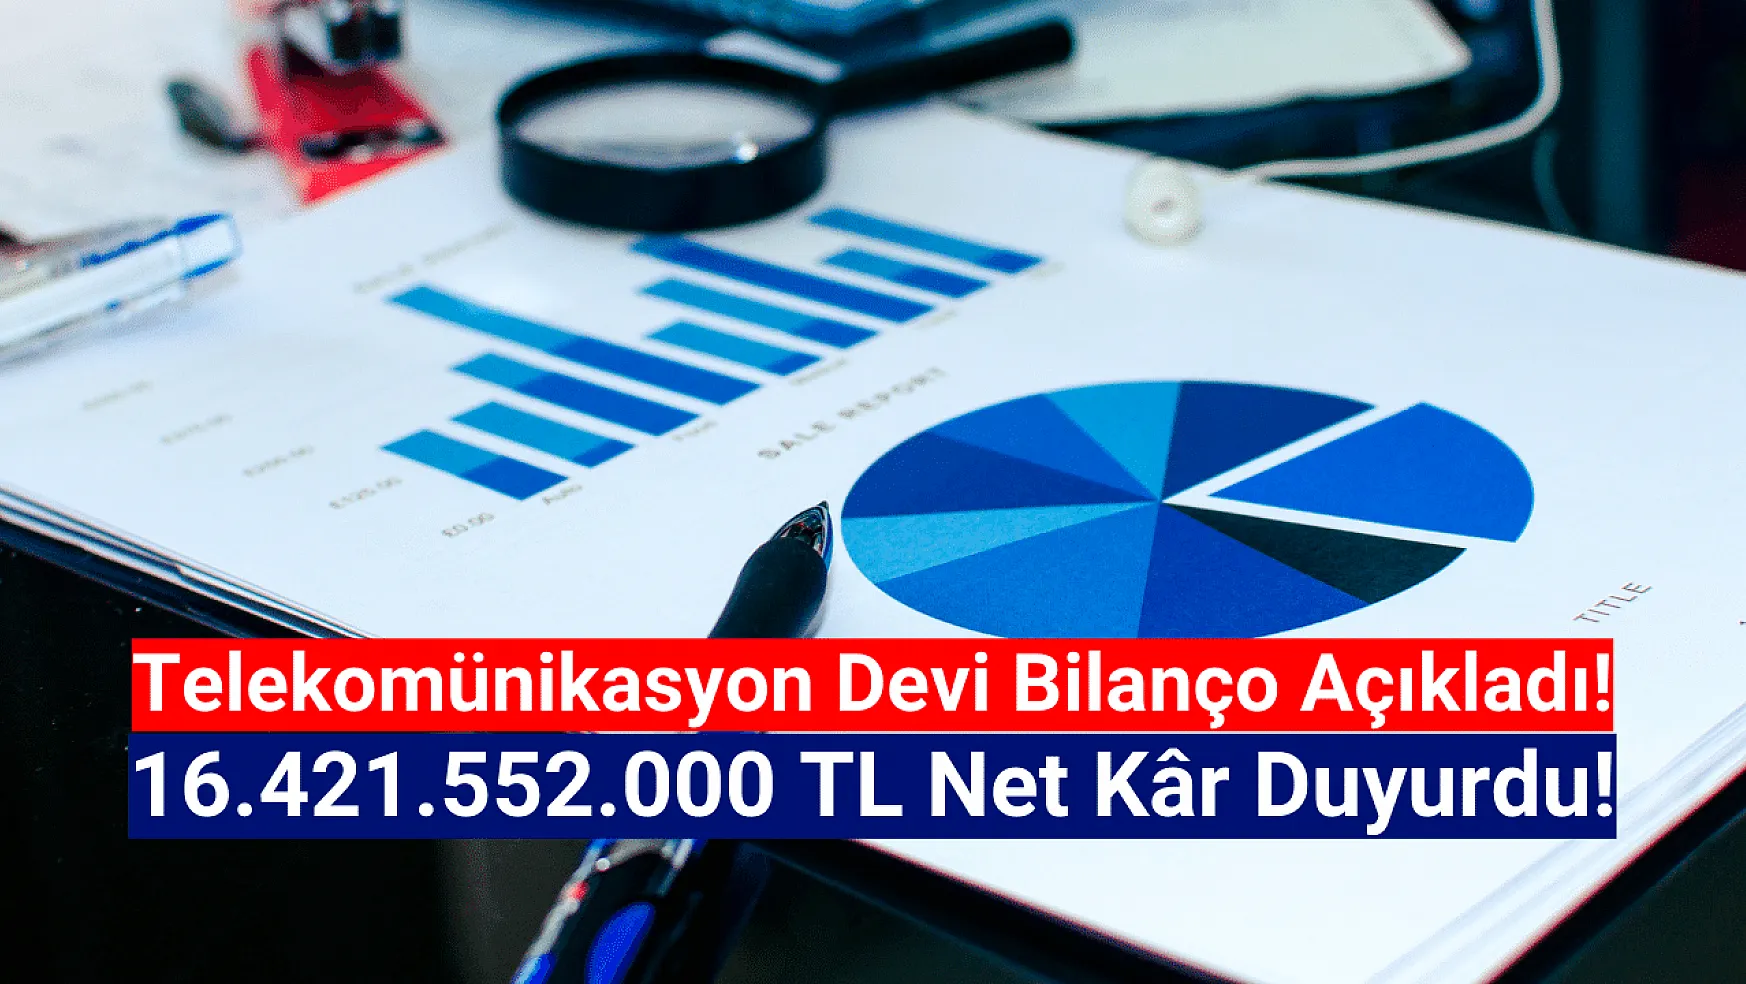 Telekomünikasyon devi 16.421.552.000 TL net kâr açıkladı!